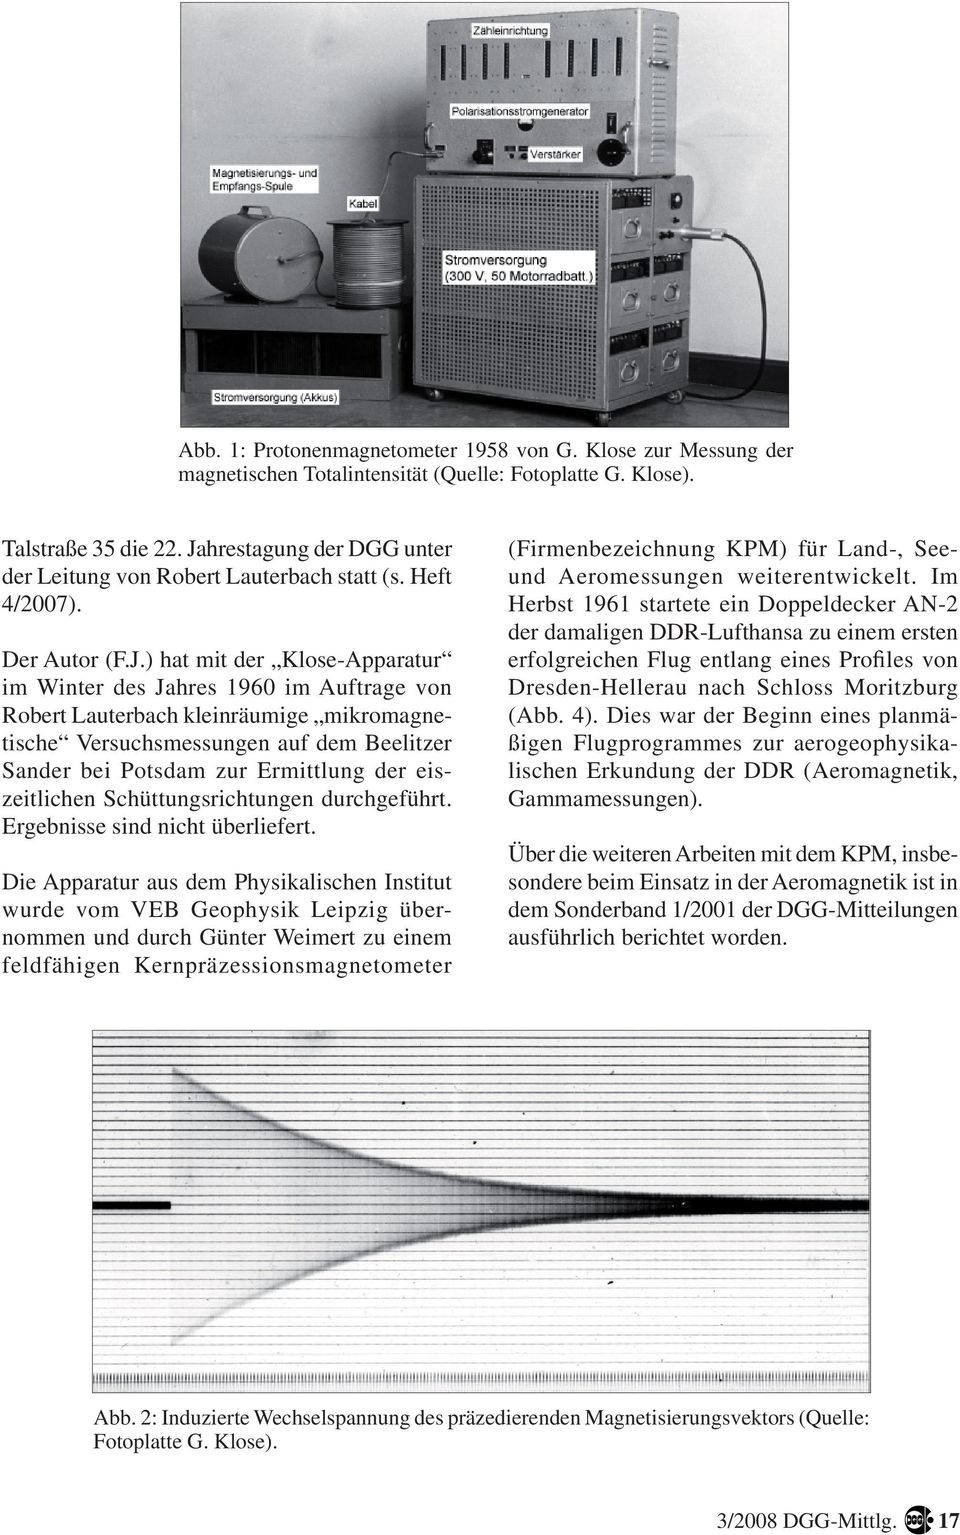 kleinräumige mikromagnetische Versuchsmessungen auf dem Beelitzer Sander bei Potsdam zur Ermittlung der eiszeitlichen Schüttungsrichtungen durchgeführt. Ergebnisse sind nicht überliefert.